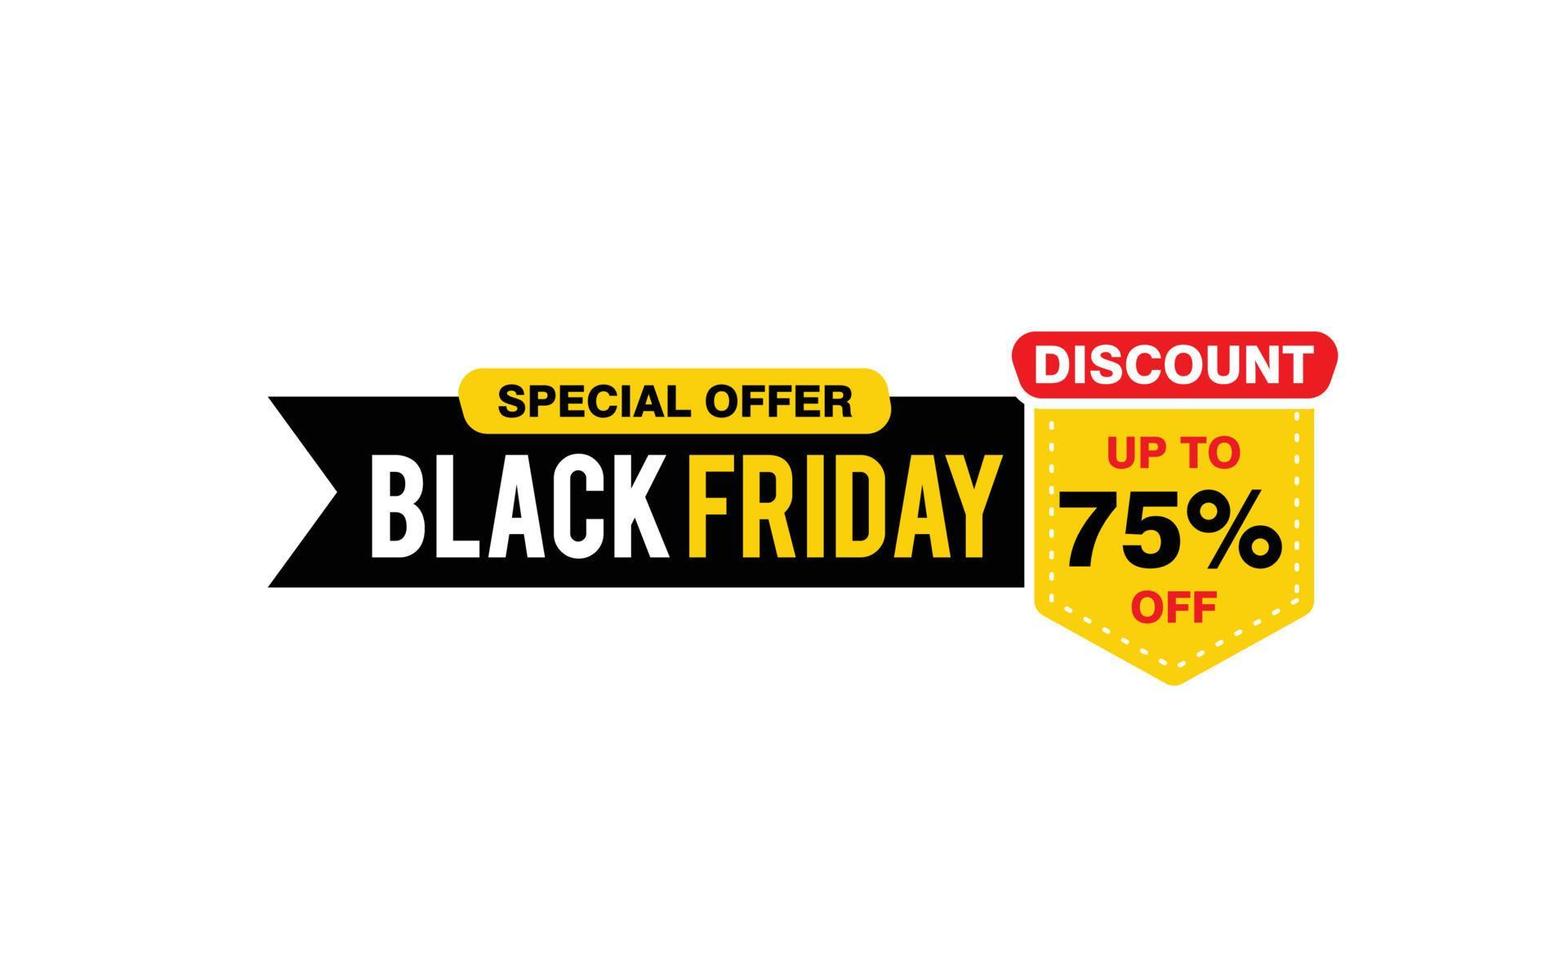 Oferta de sexta-feira negra com desconto de 75%, liberação, layout de banner de promoção com estilo de adesivo. vetor